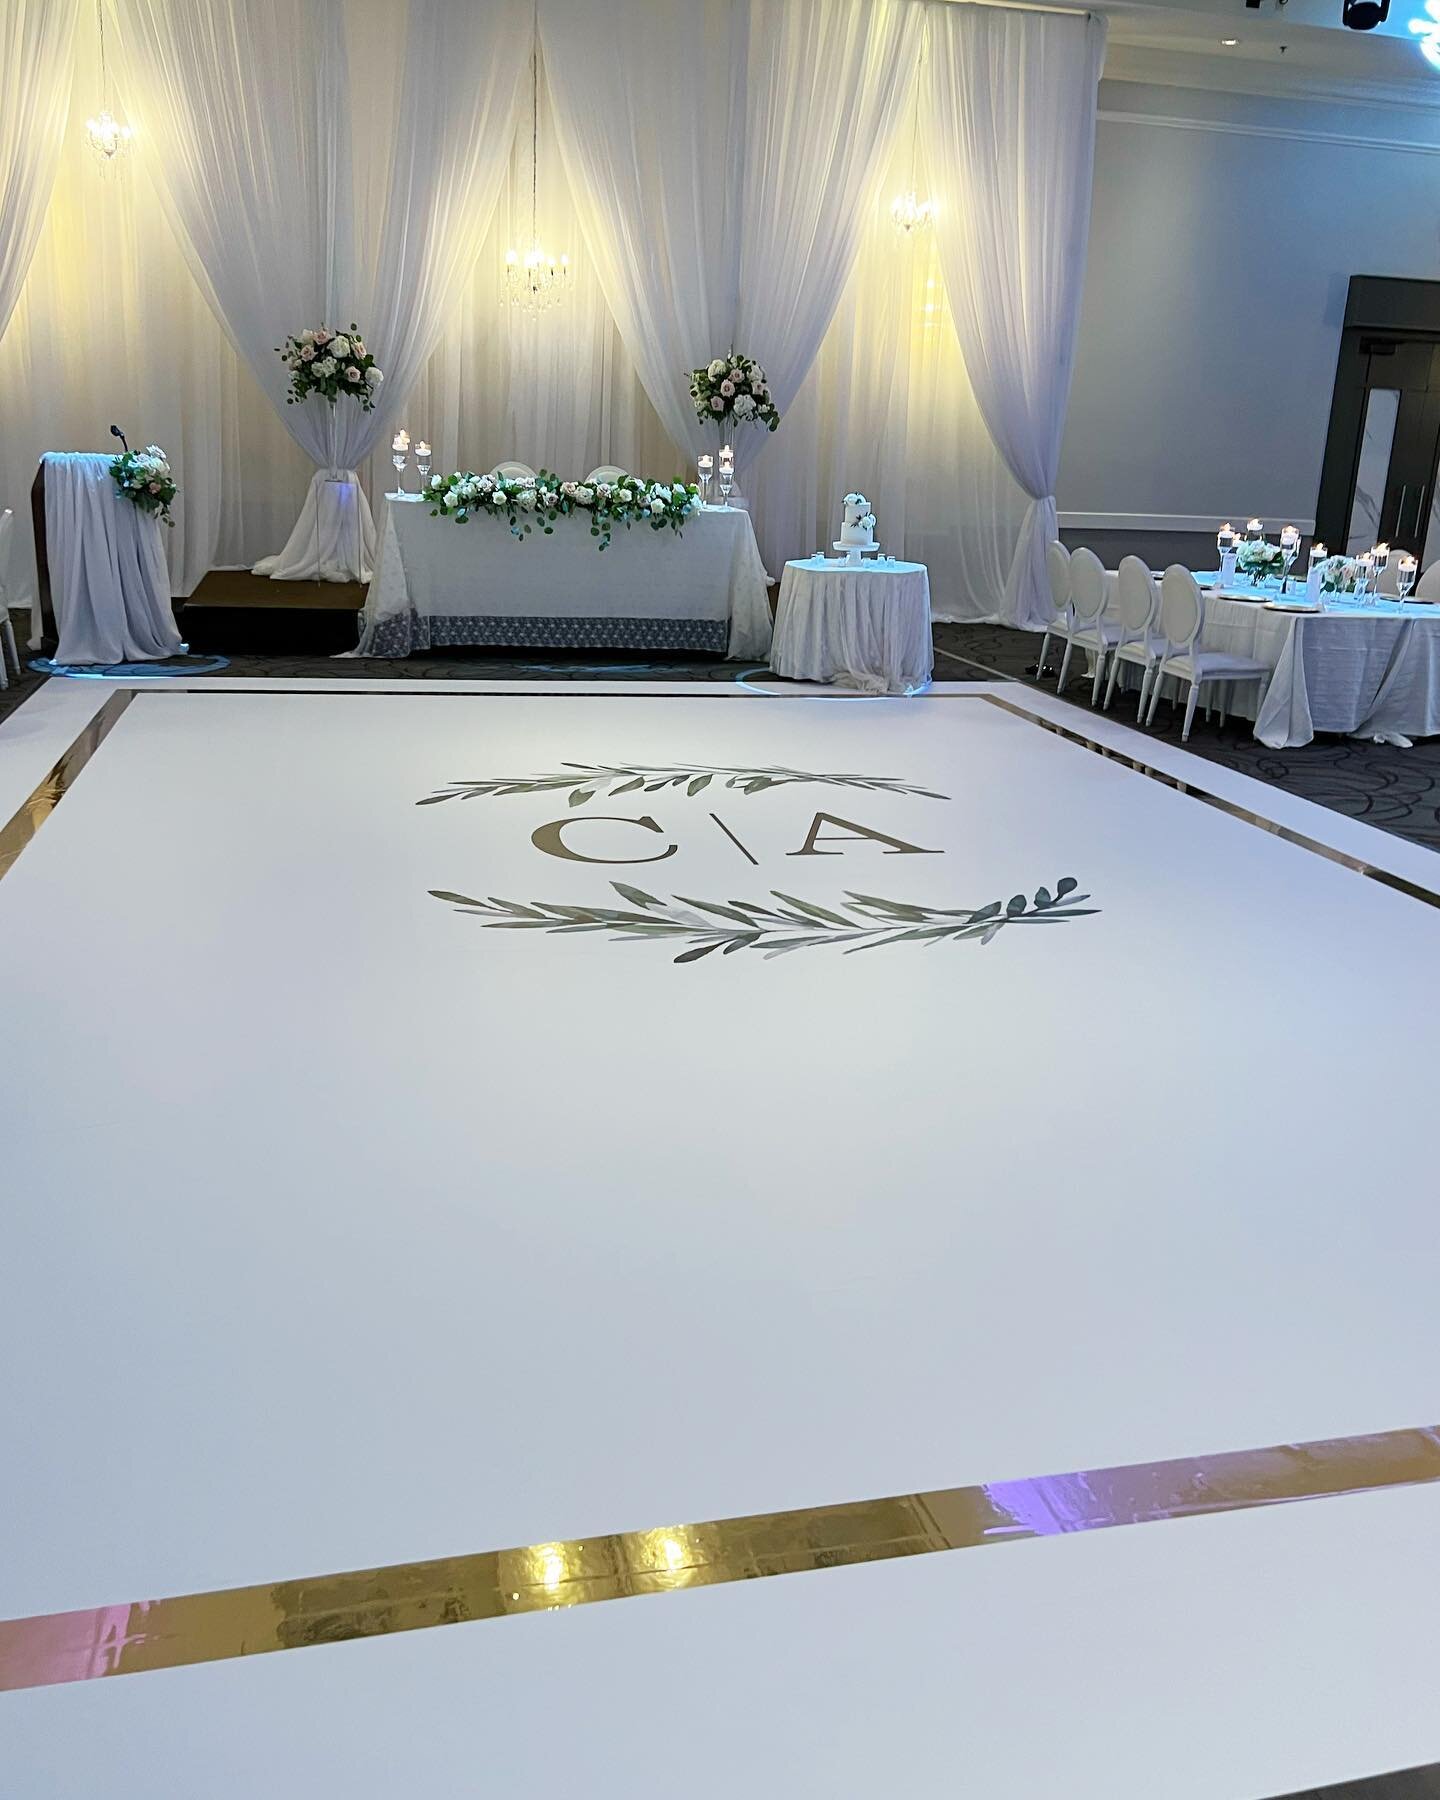 Contact us today for all your floor wraps needs!! 

#weddingdecor&nbsp;#bride&nbsp;#groom&nbsp;#sangeet #torontowedding&nbsp;#dancefloor #vinylfloor&nbsp;#graphicdesign #floorwrap&nbsp;#dancefloorwrap #bramptonwedding #mississaugawedding #customfloor